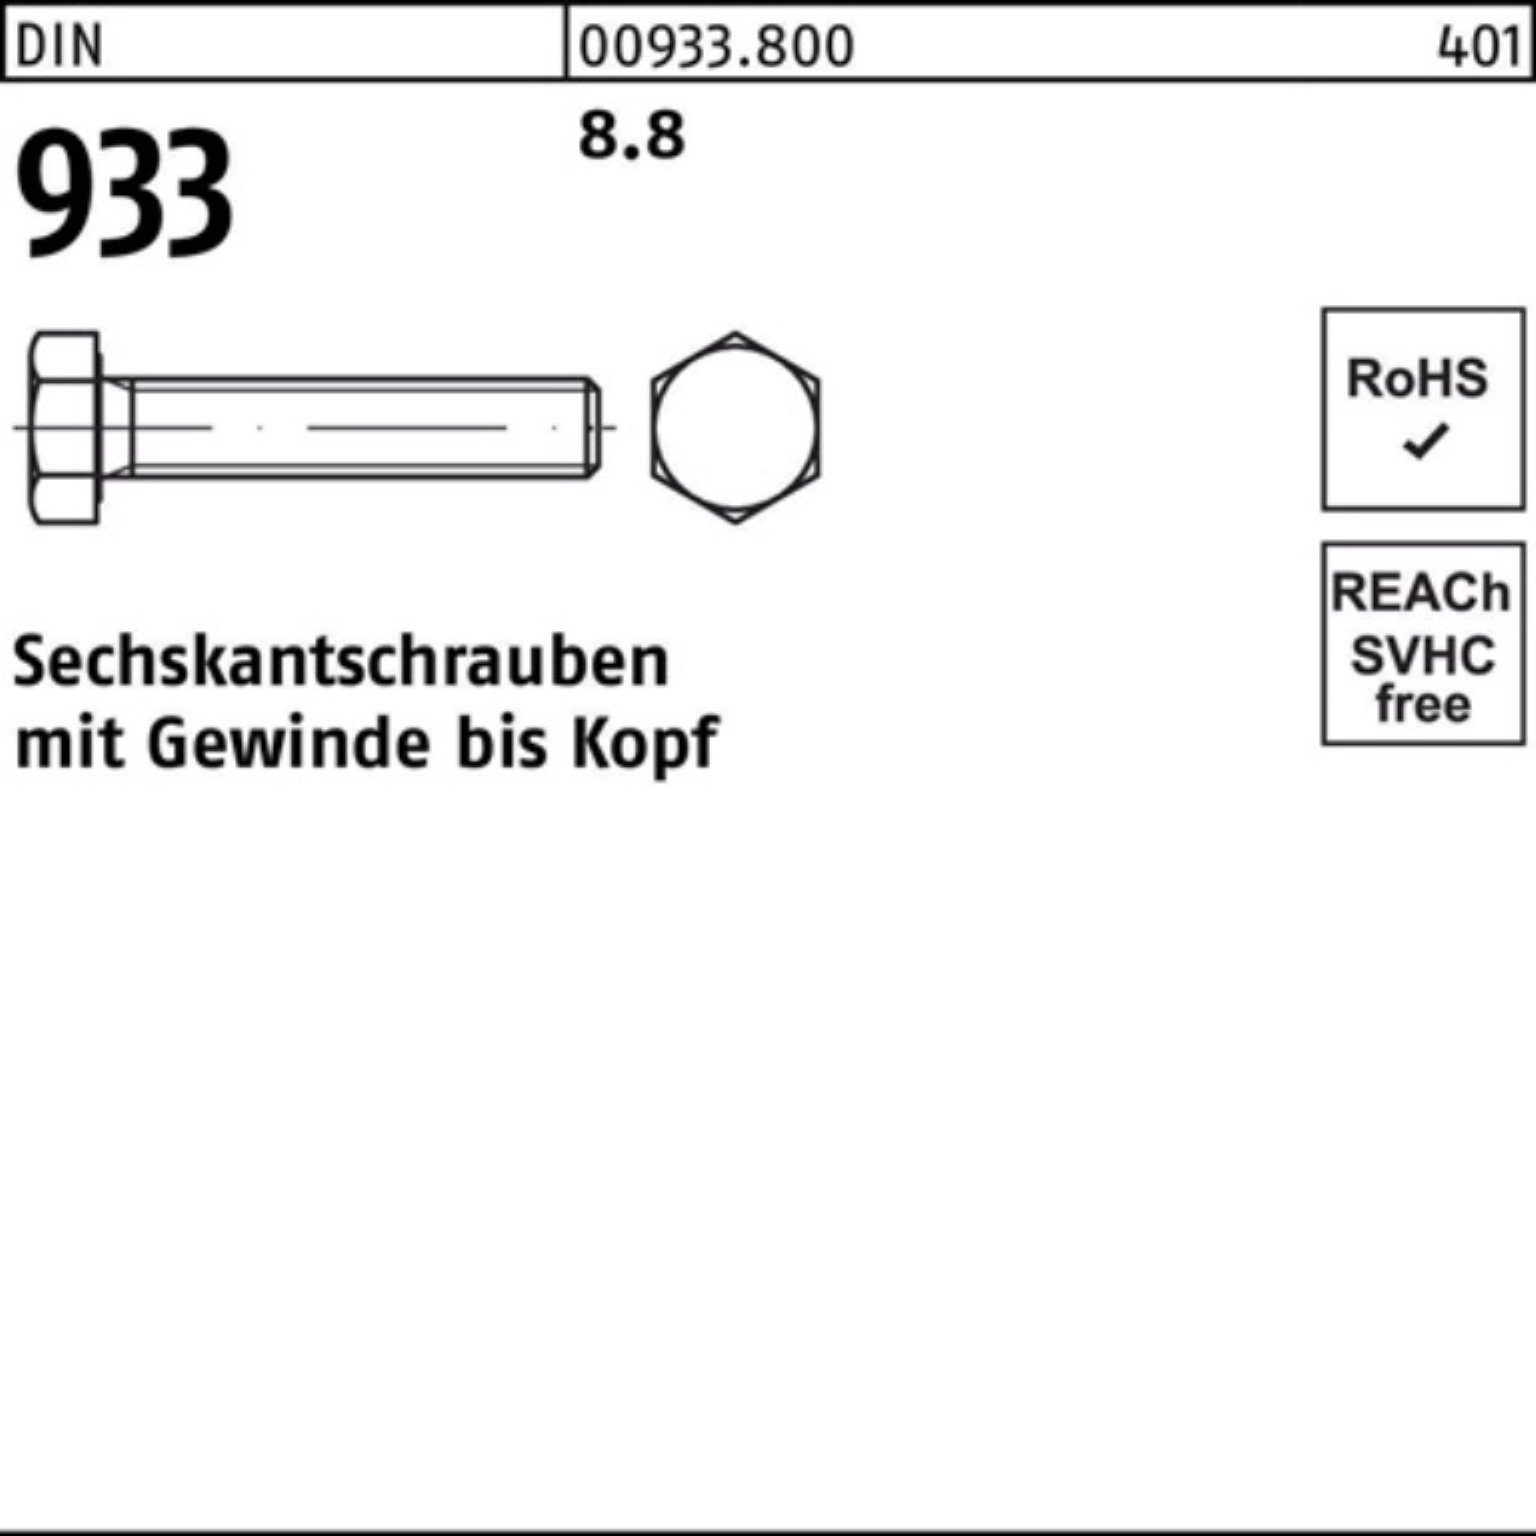 100er Sechskantschraube Reyher 933 DIN 8.8 VG 10 90 M24x Pack 933 Sechskantschraube DIN Stück